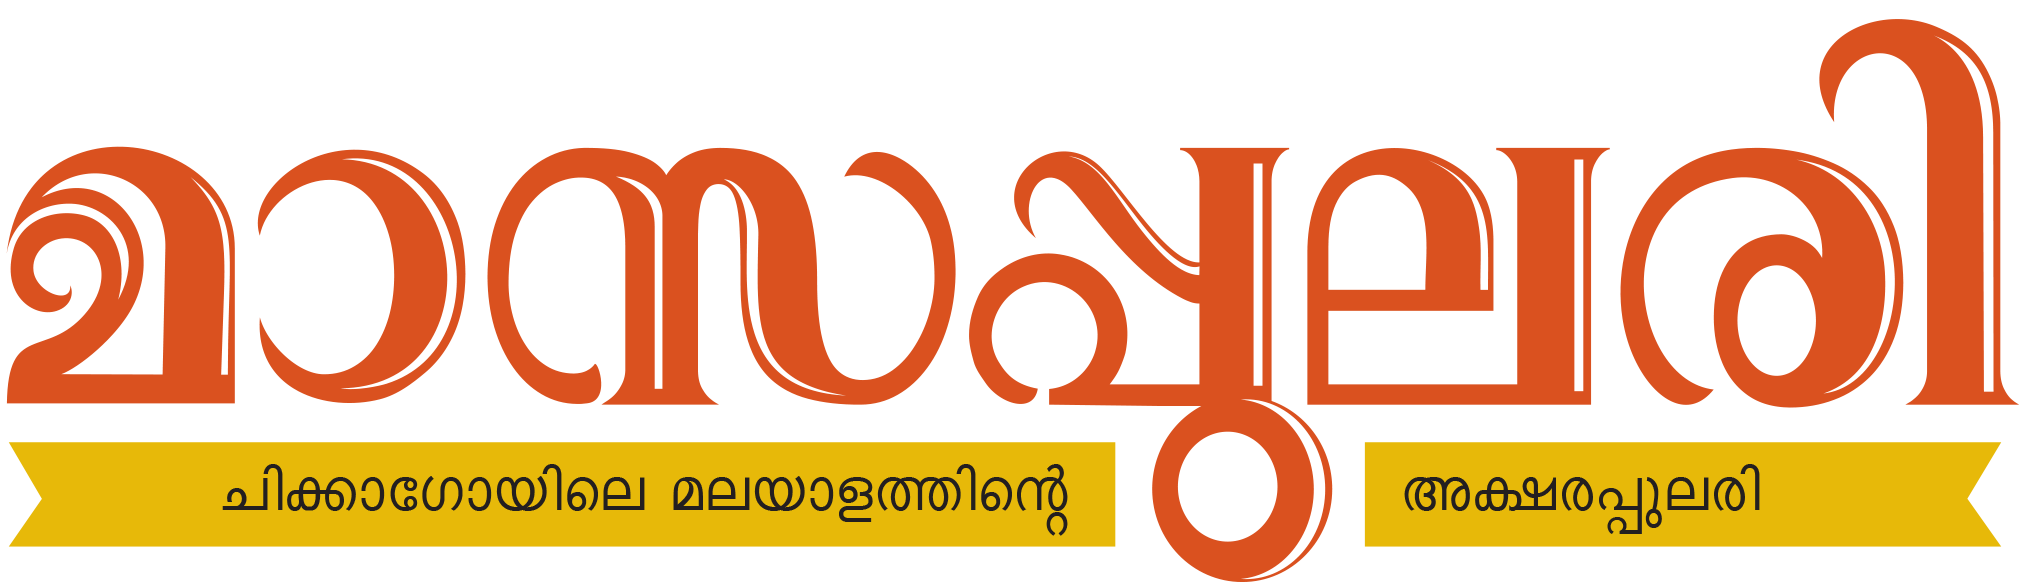 masapulari-logo